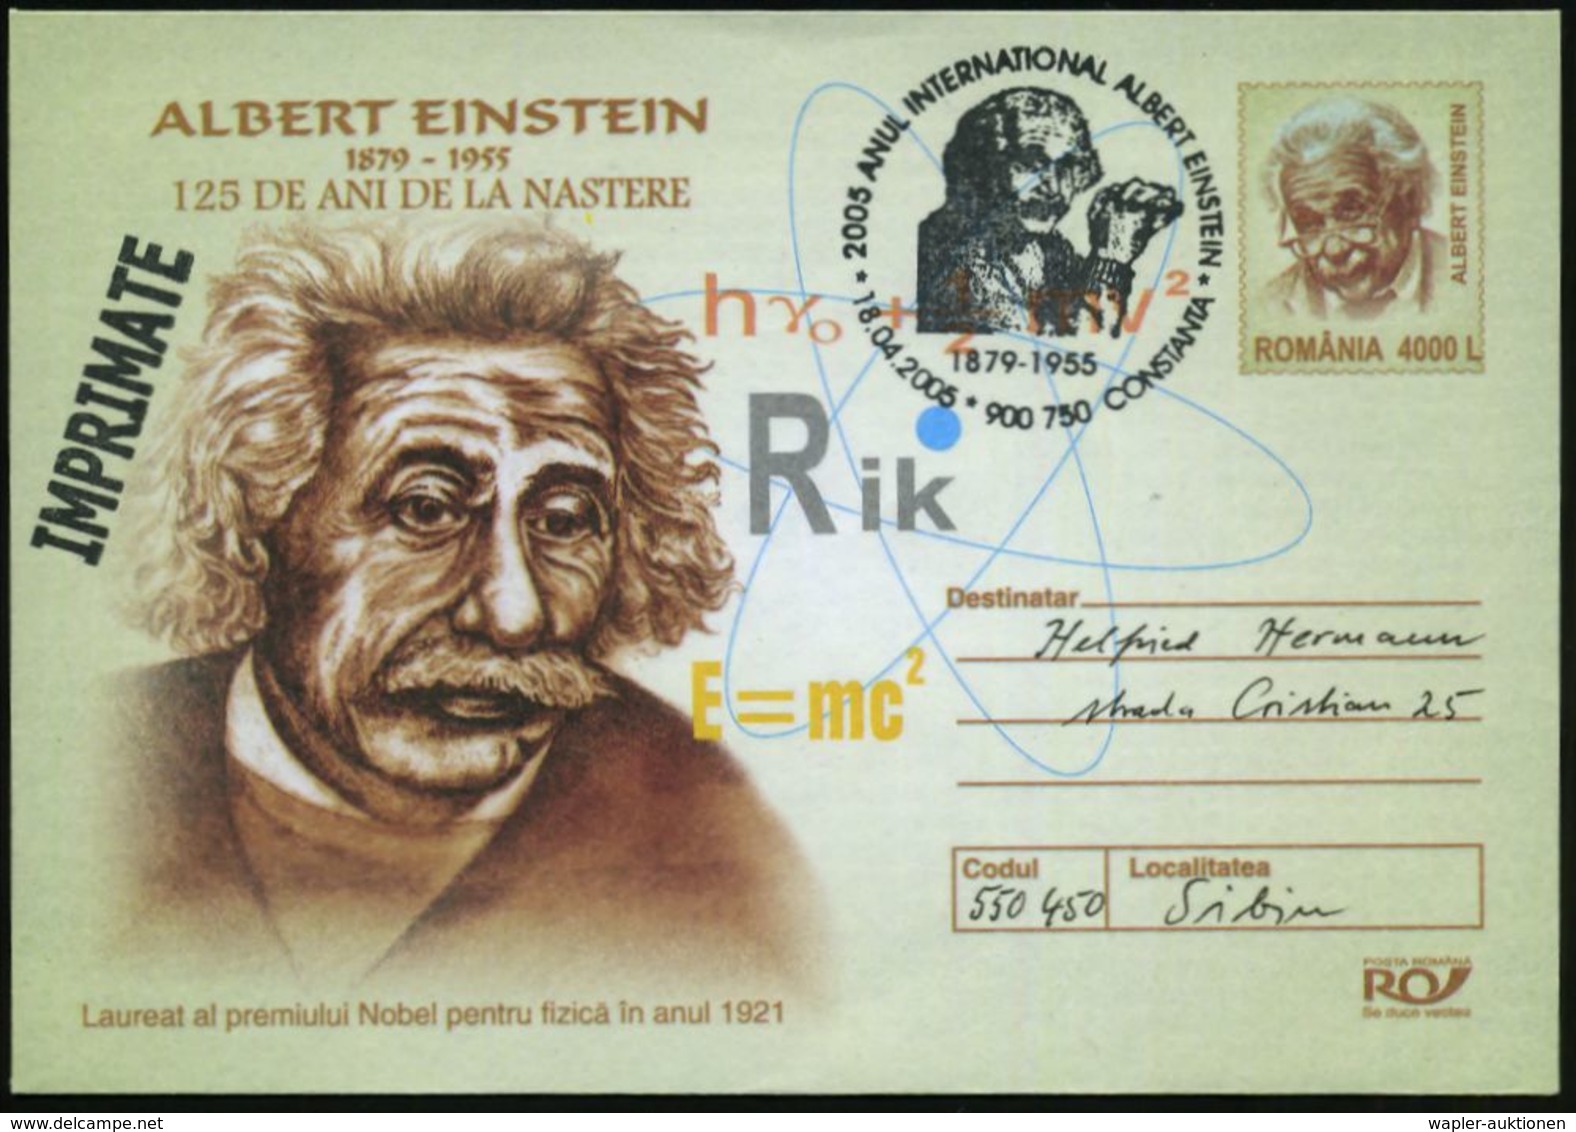 RUMÄNIEN 2005 (18.4.) SSt.: 900 750 CONSTANTA/..ANUL INTERNAT. ALBERT EINSTEIN (Brustbild Alter Einstein) Motivähnl. Son - Nobelprijs